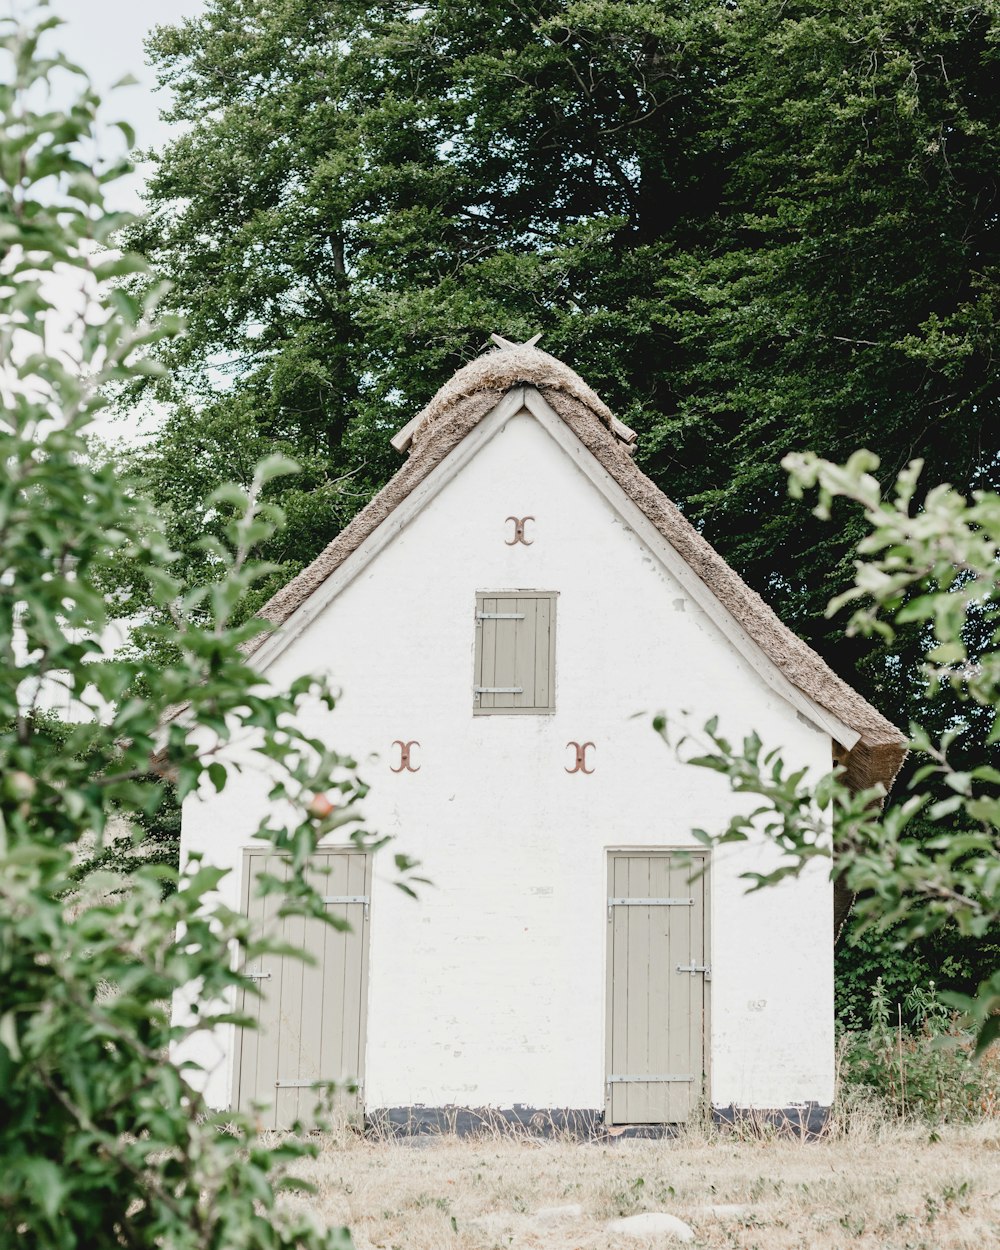 Casa de concreto branco cercada por árvores de folhas verdes